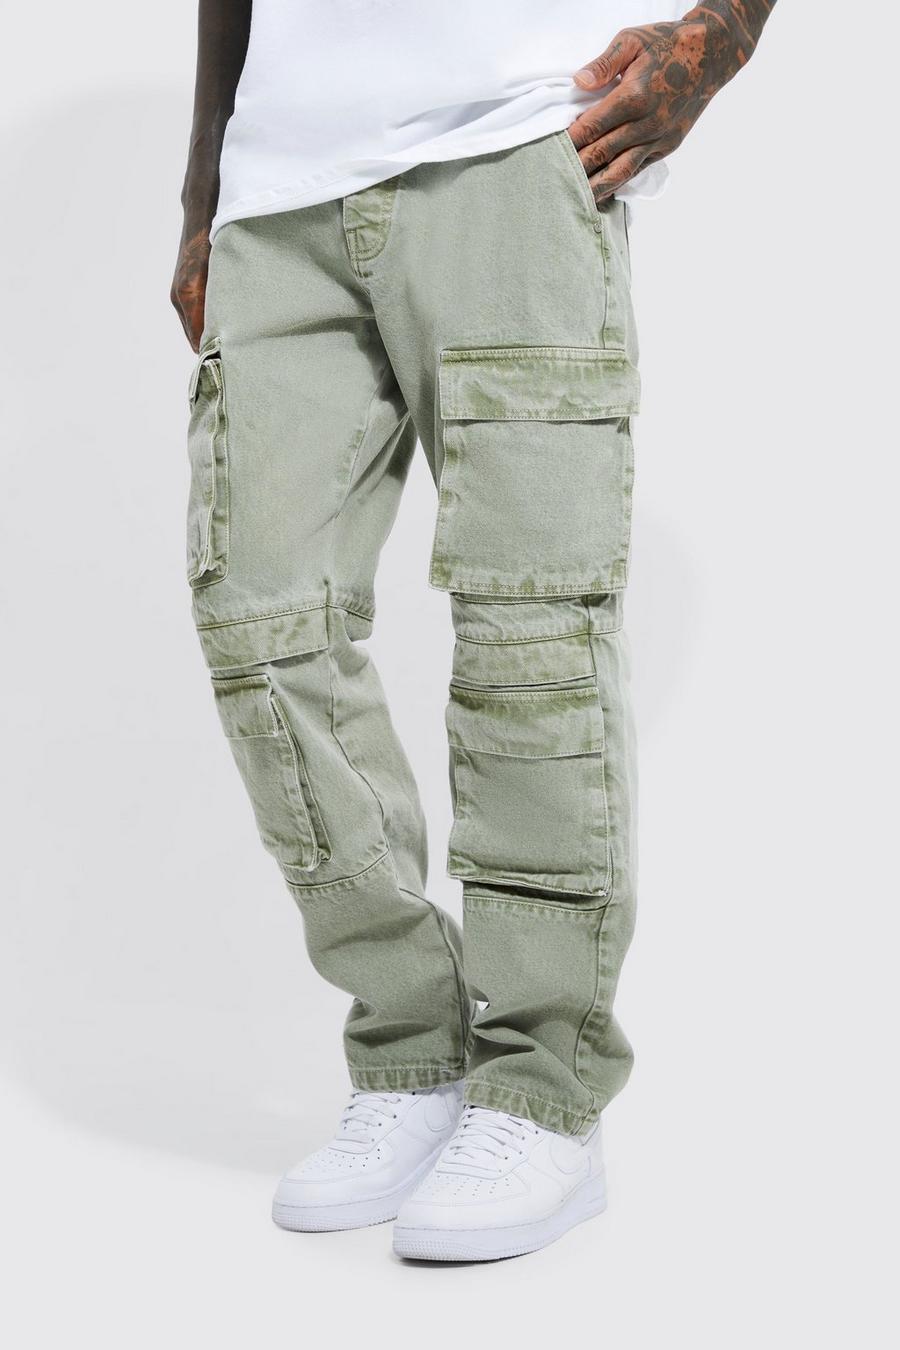 Baggy Jeans- Olive Green Cargo Pocket Denim Jeans for Men Online